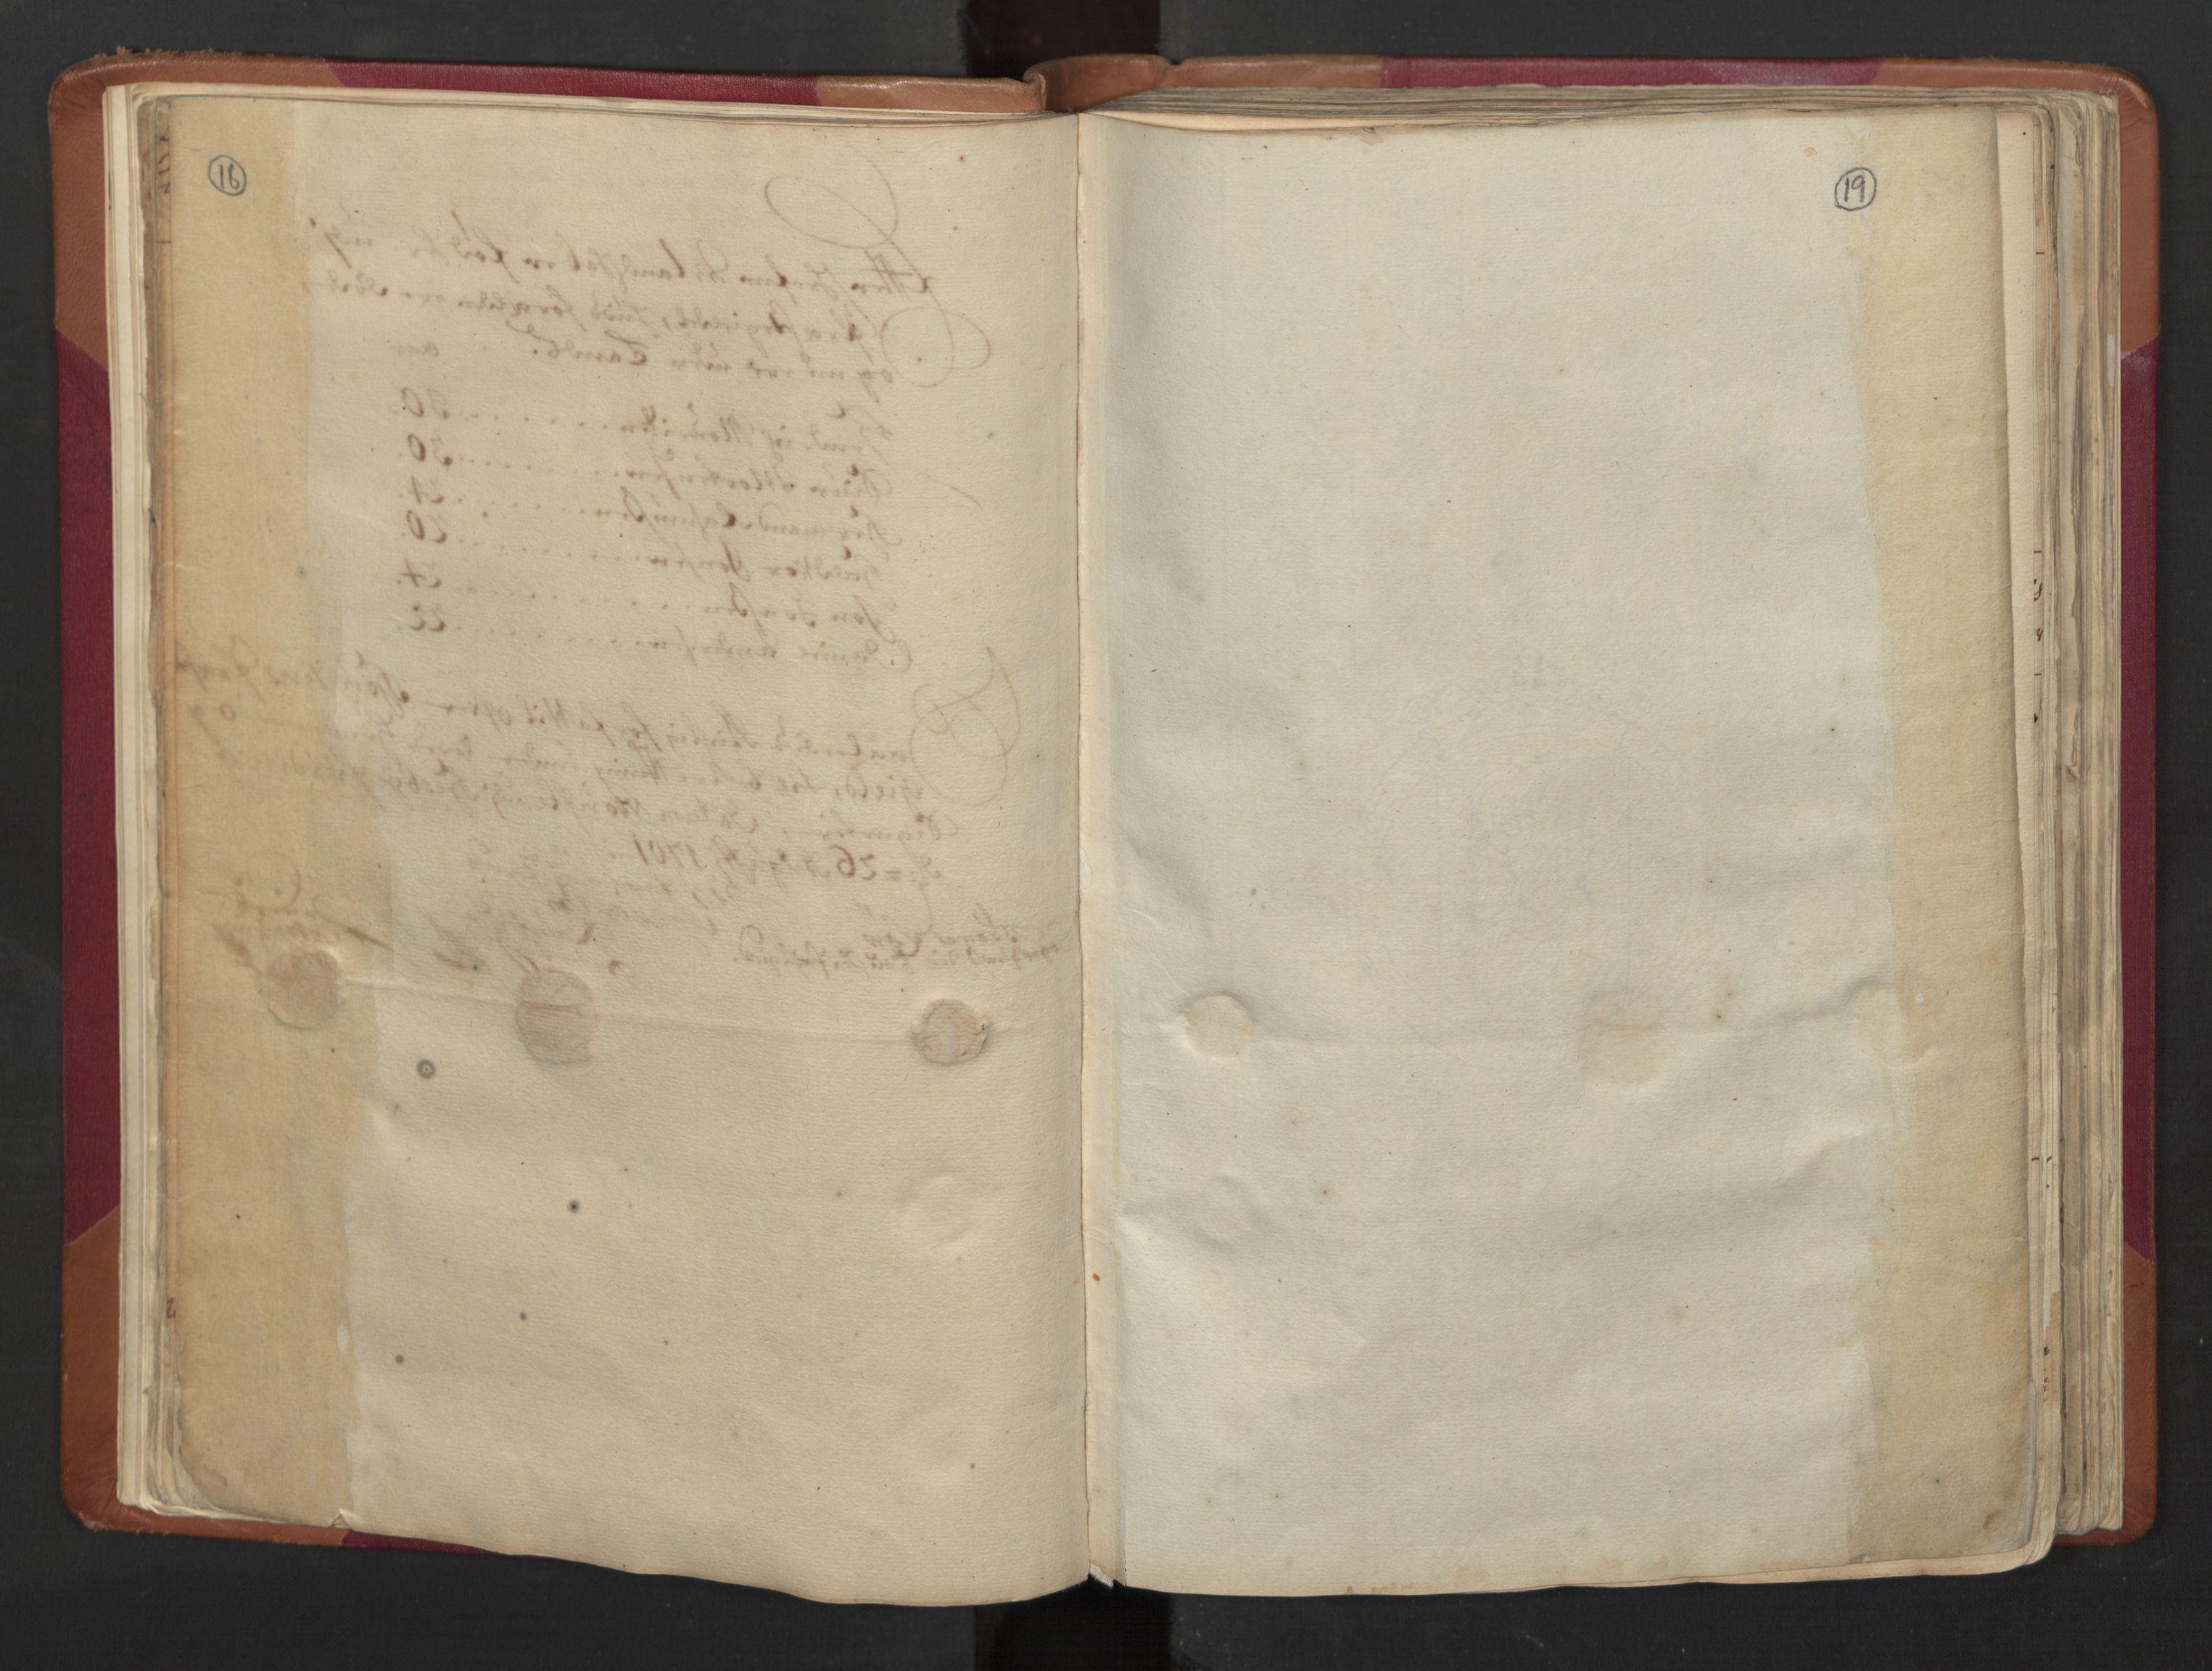 RA, Census (manntall) 1701, no. 5: Ryfylke fogderi, 1701, p. 18-19